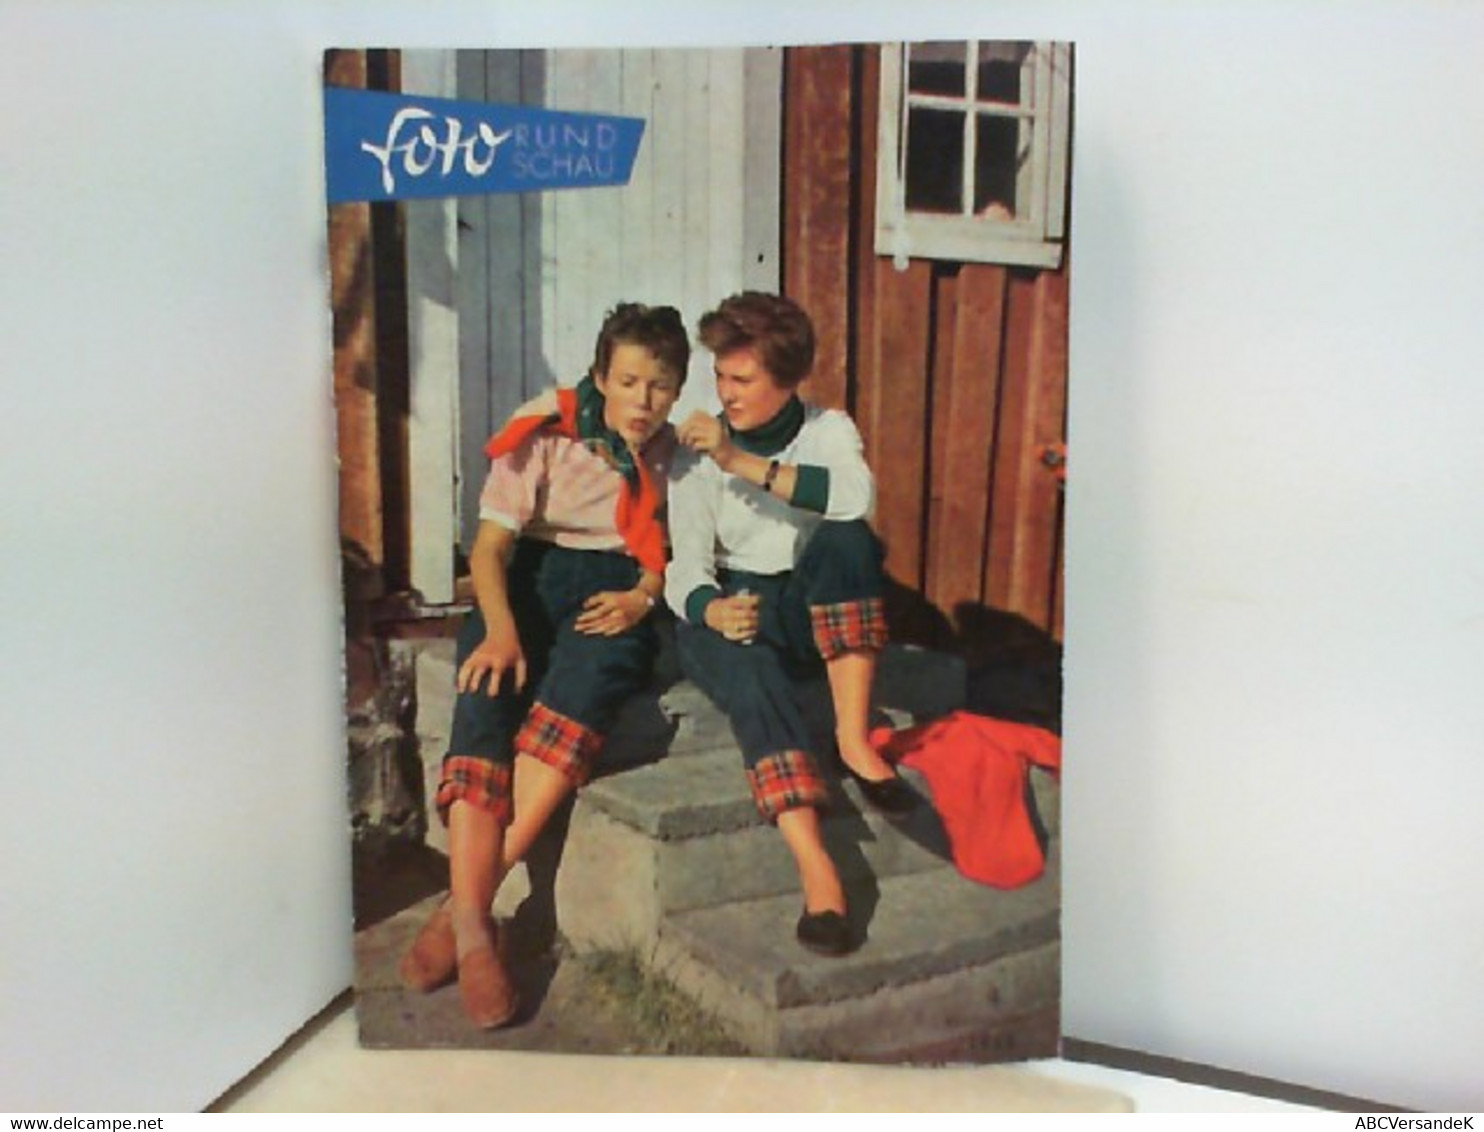 Foto Rundschau - Die Lebendige Zeitschrift Für Foto Und Film - Heft 4 - Fotografie